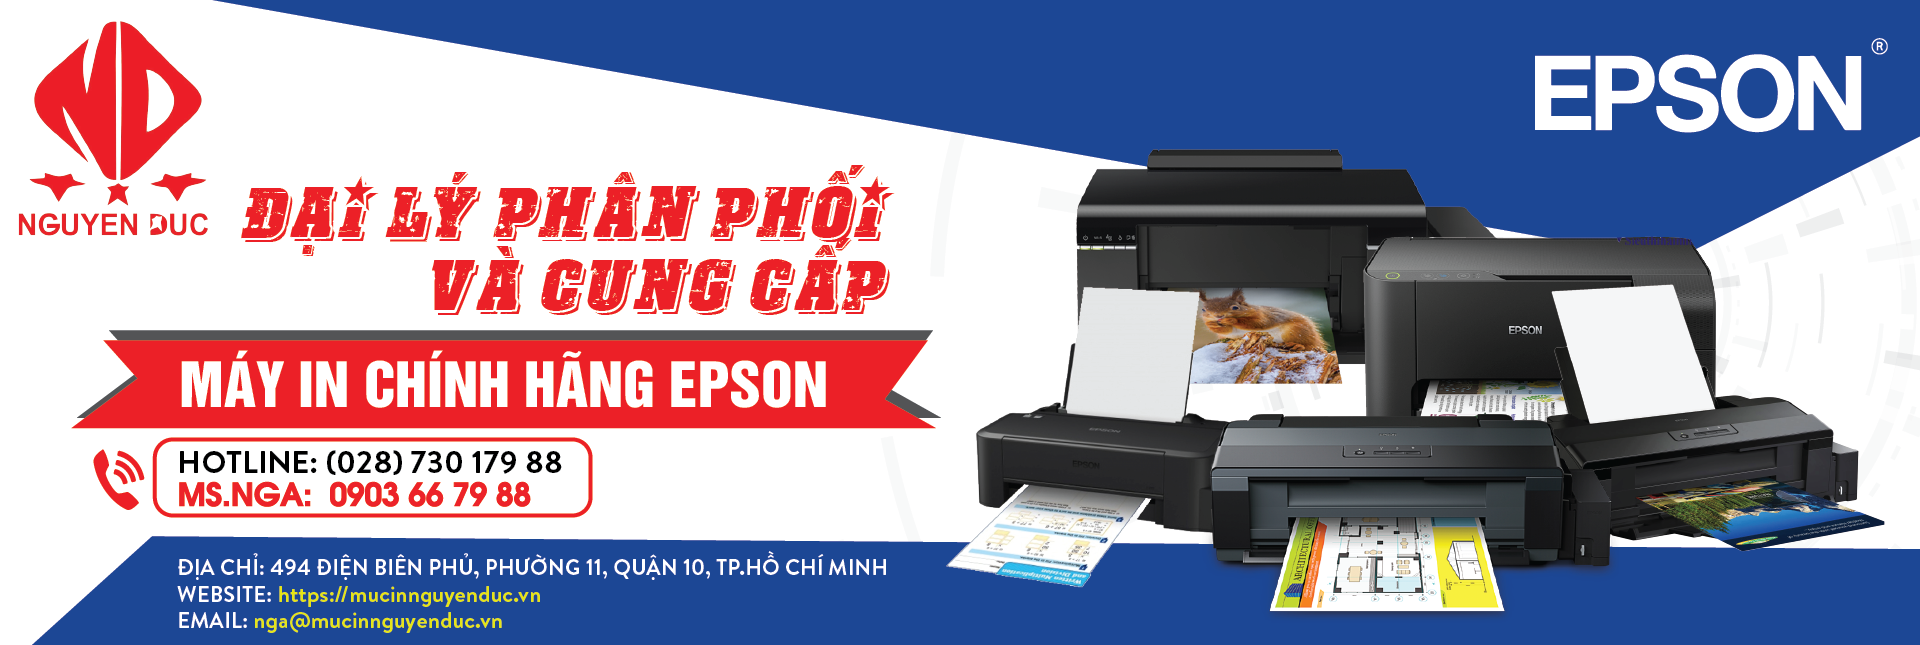 Đại lí phân phối máy in epson LQ-310 - chính hãng, giao hàng tại tỉnh Nam Định